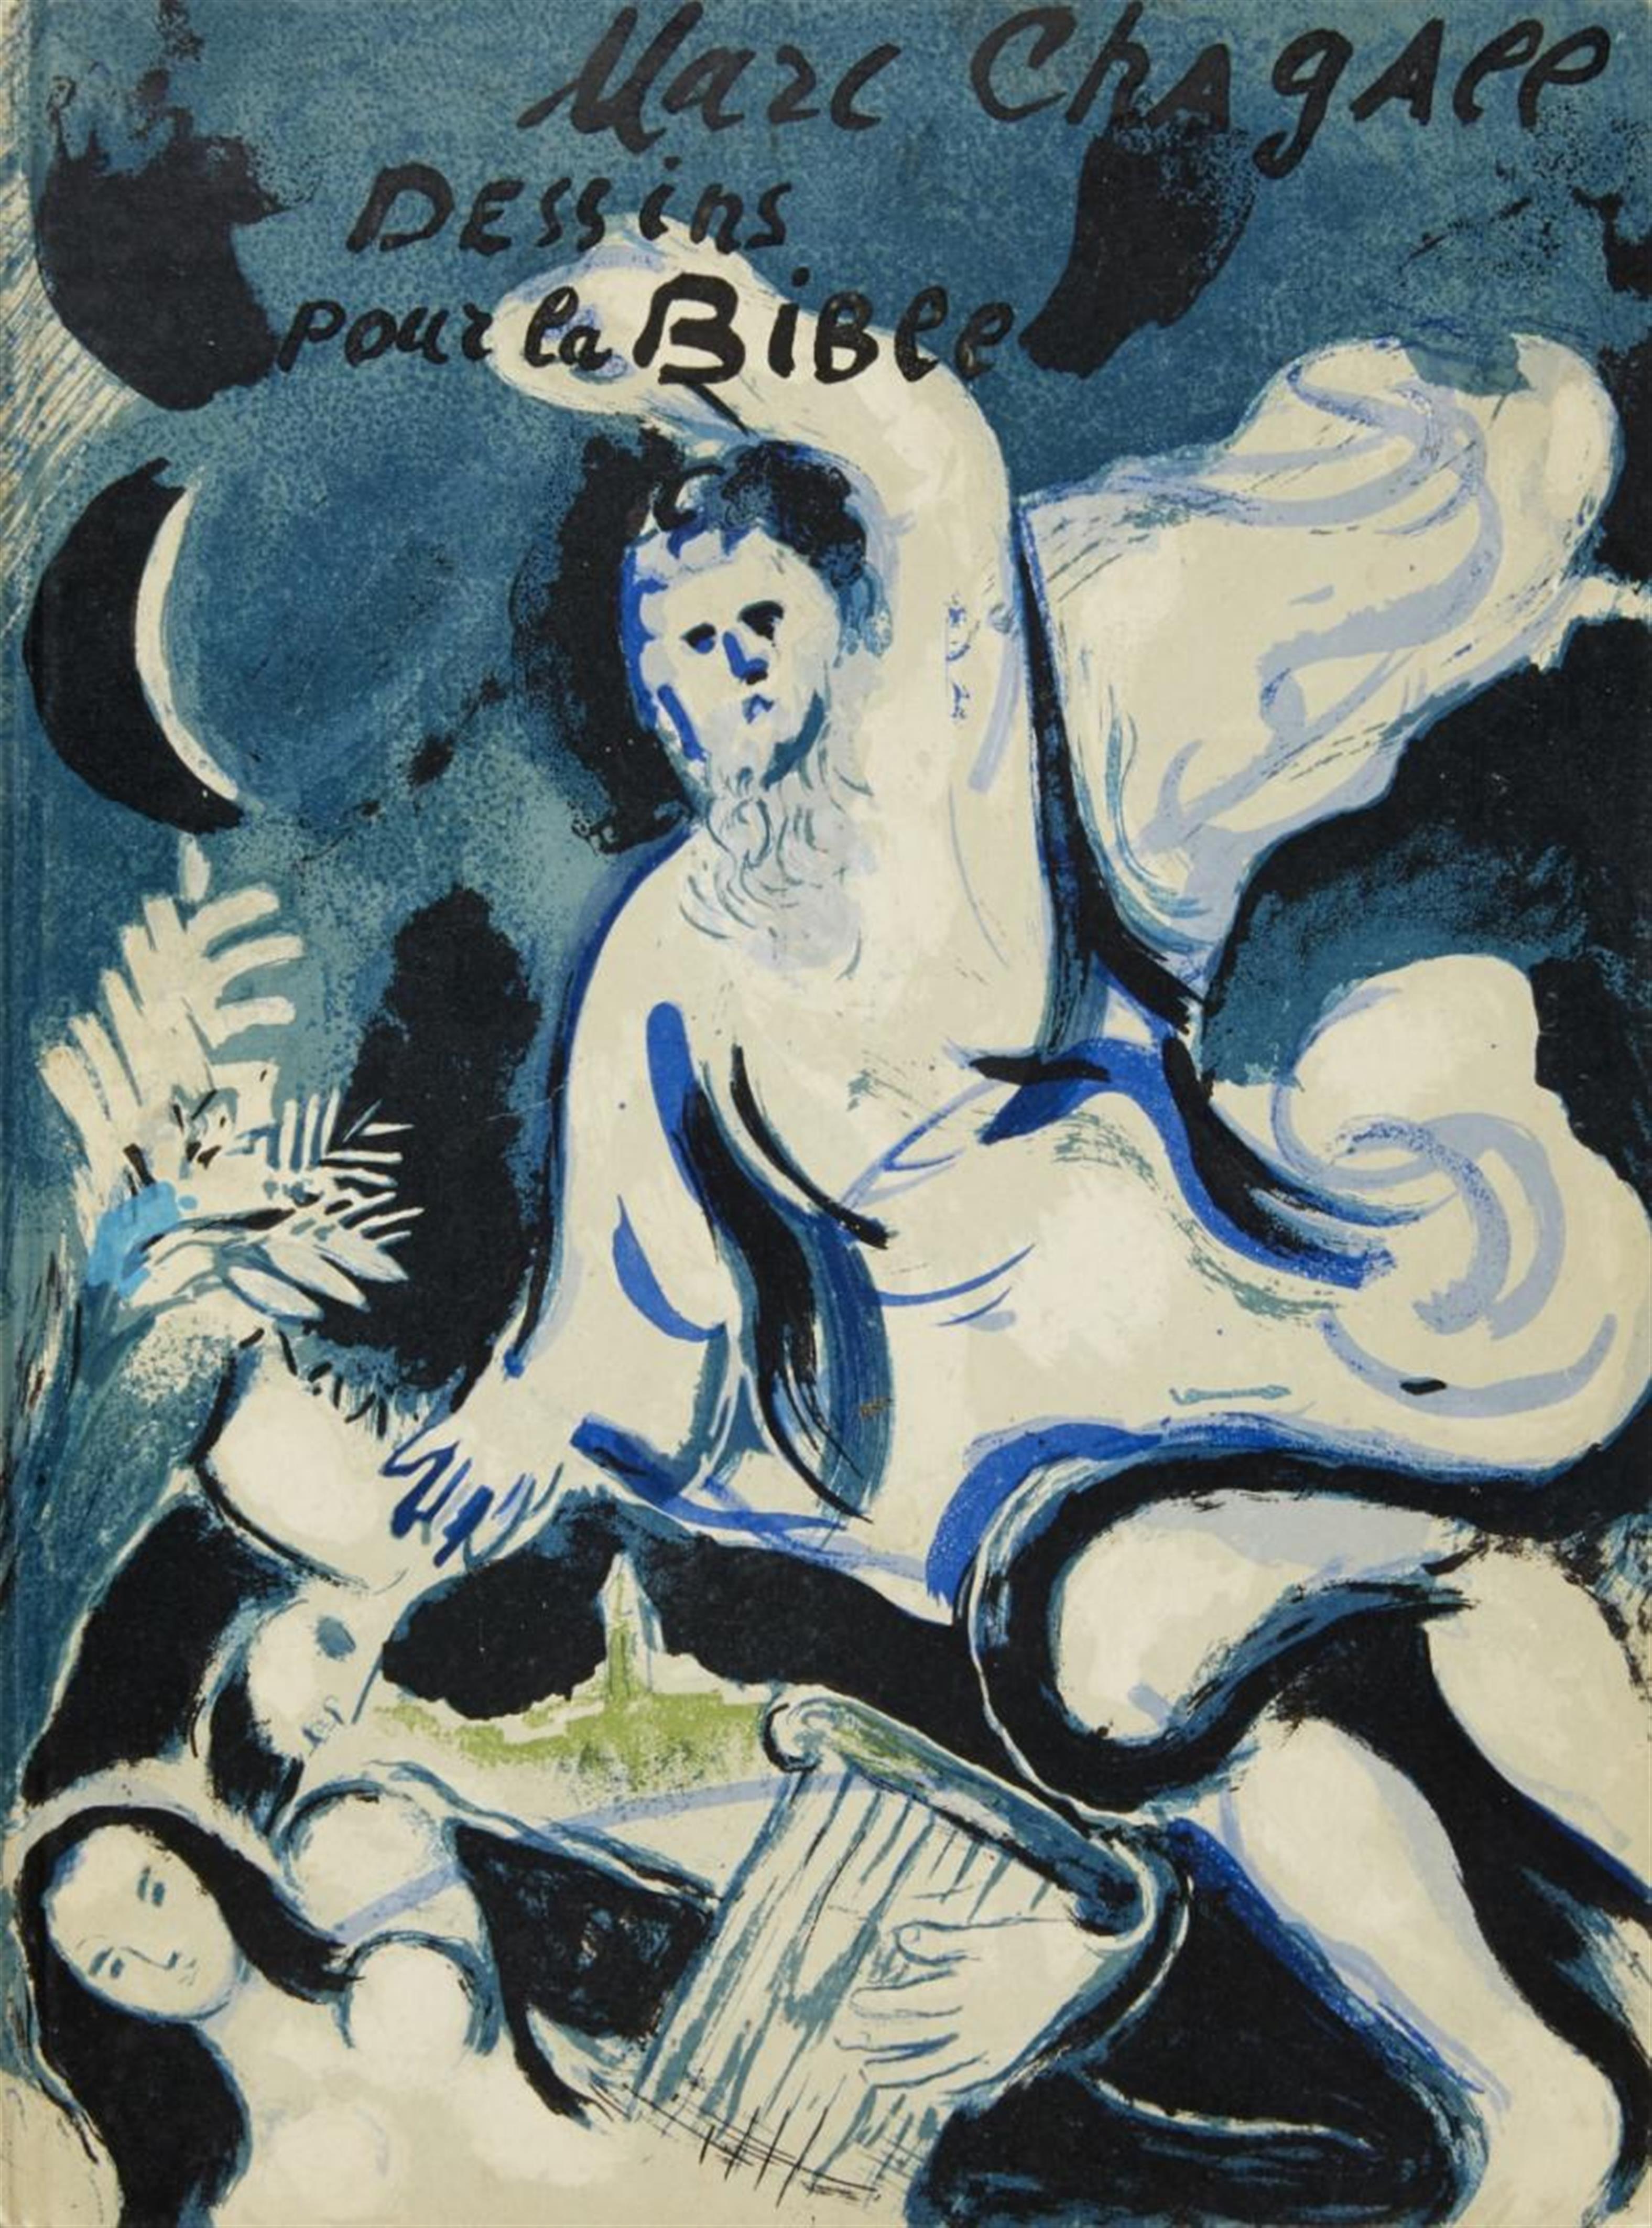 Marc Chagall - Dessins pour la Bible - image-1